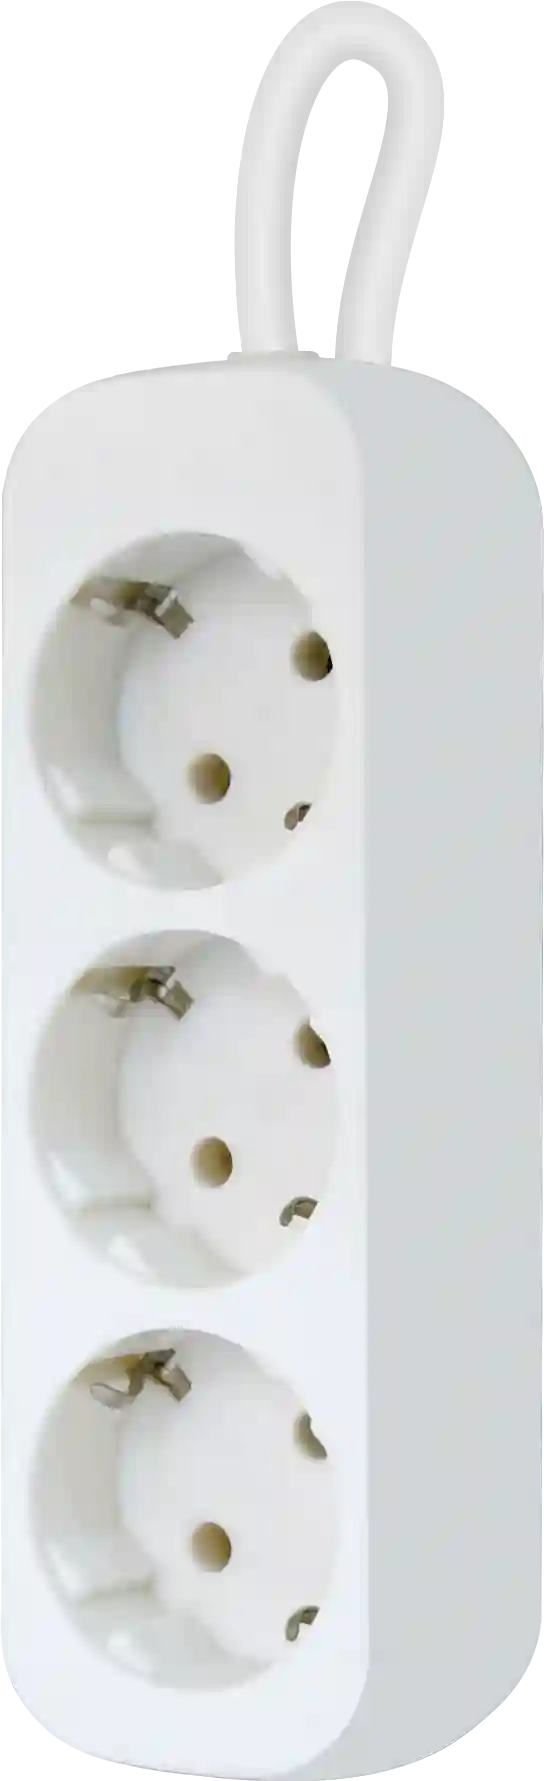 Удлинитель с заземлением DEFENDER E318 1,8м White (99221)